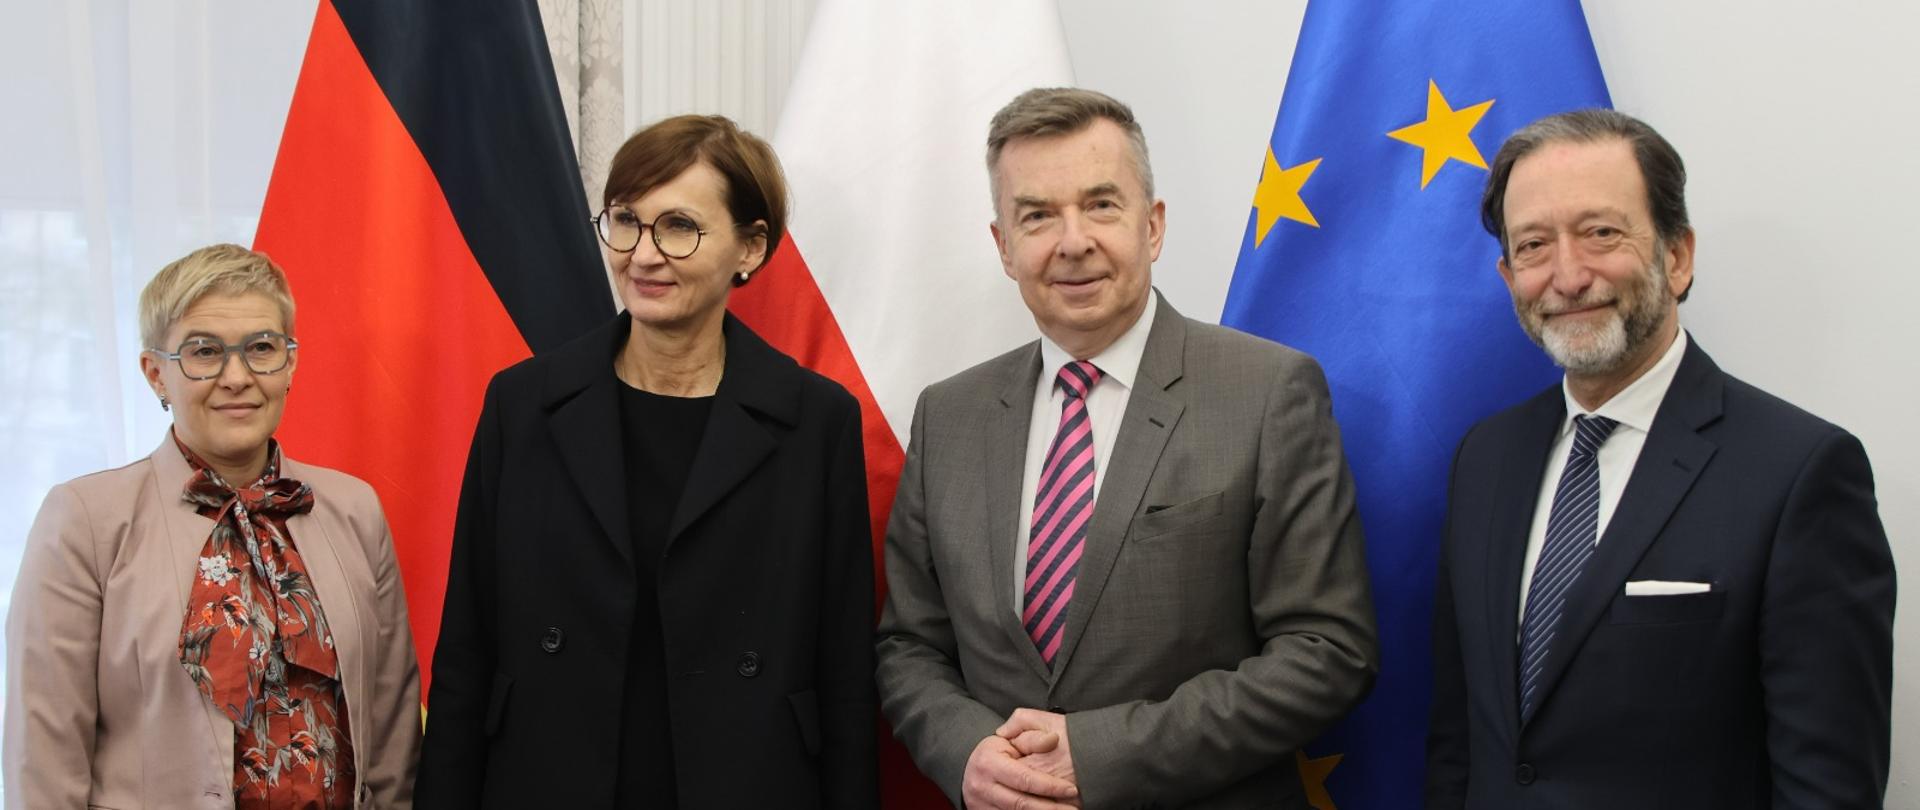 Minister Wieczorek i wiceminister Mrówczyńska stoją obok mężczyzny w czarnym garniturze i kobiety w czarnej marynarce, za nimi na tle ściany flagi Polski, Niemiec i UE.